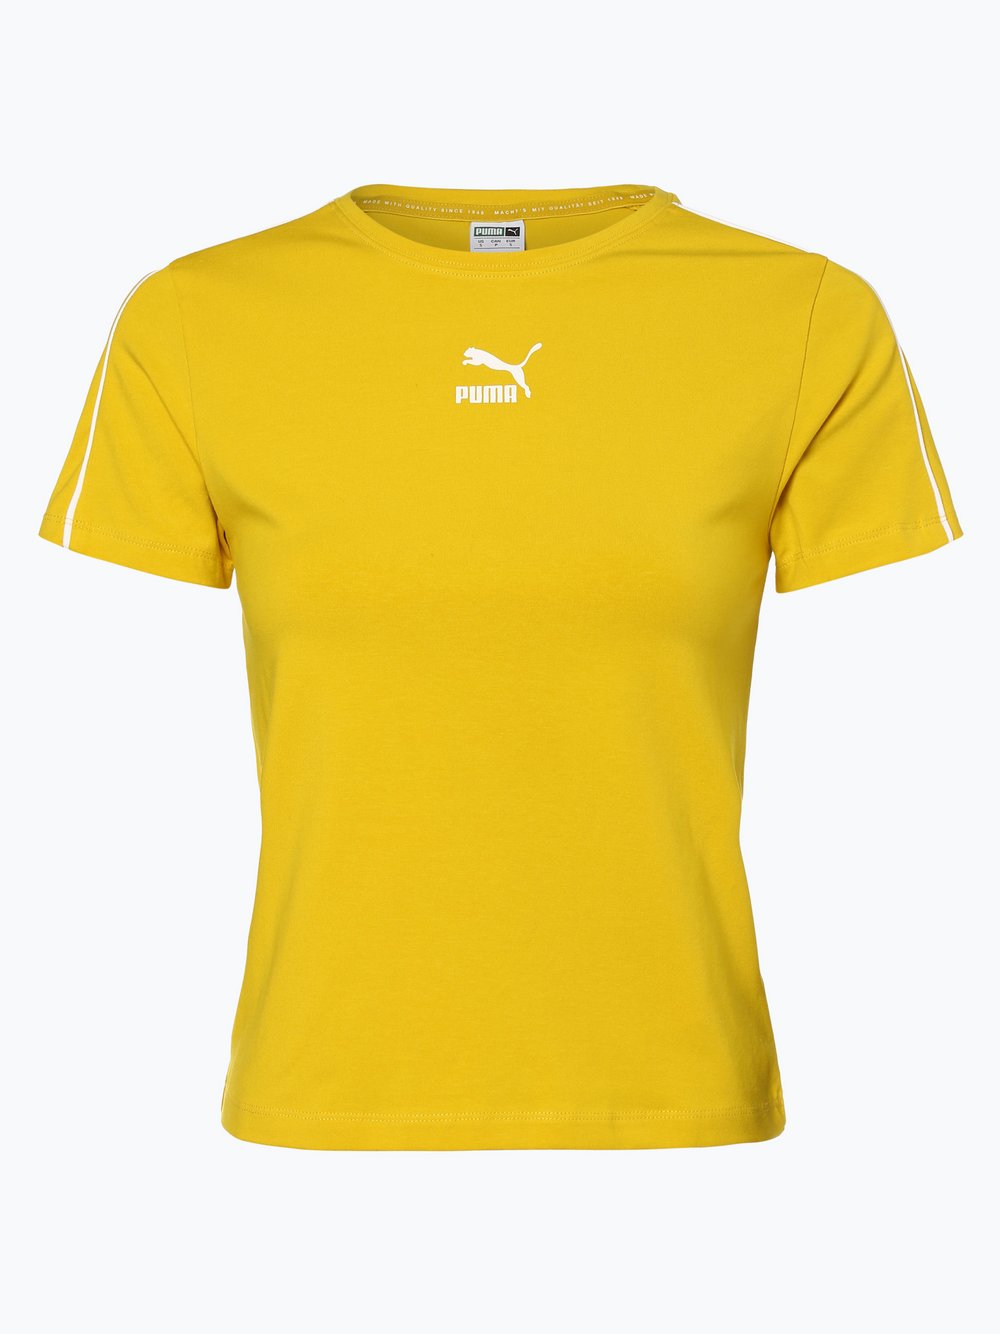 Puma - T-shirt damski, żółty